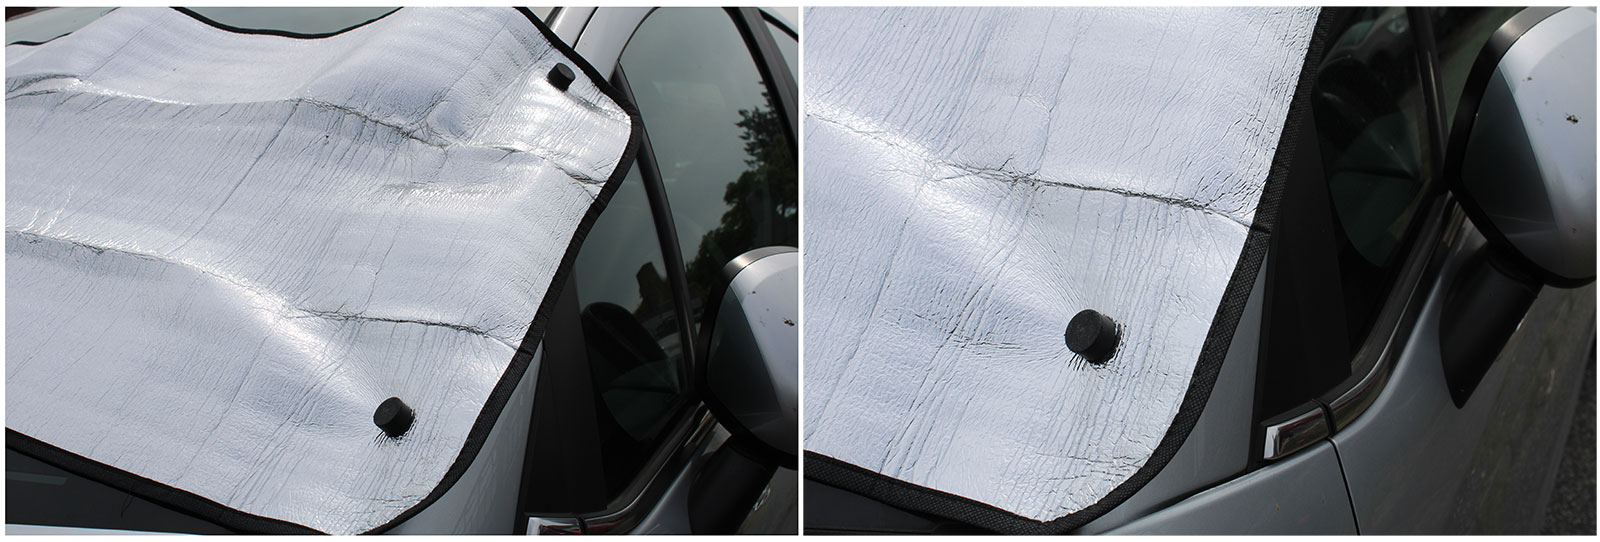 Brug magneter til at holde dit forrudedækken på plads og skabe skygge med din bils bagsmæk